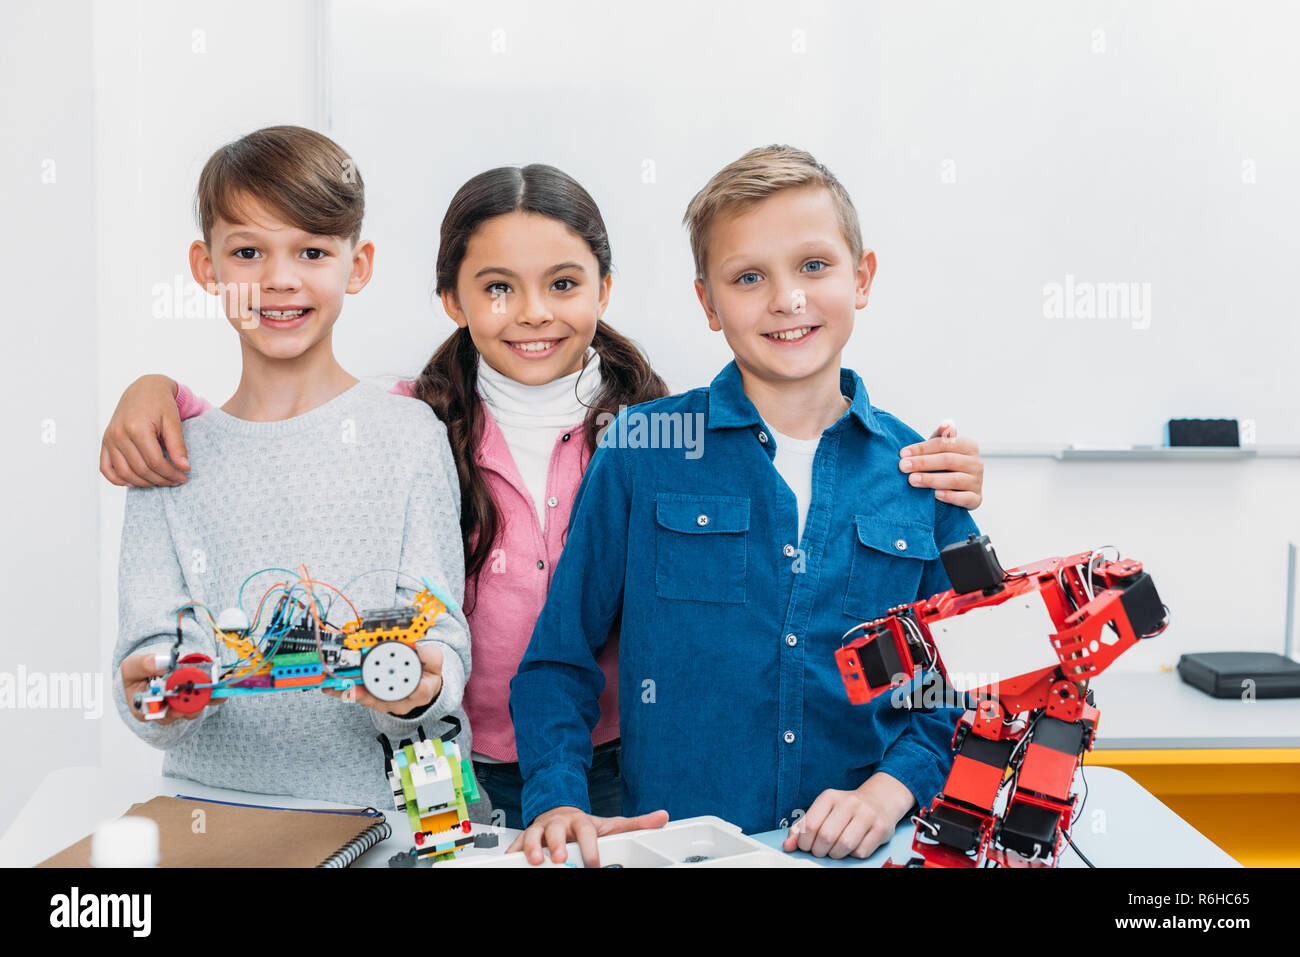 Glückliche Schüler Holding elektrische Roboter und Kamera in stammzellen Klasse Stockfoto